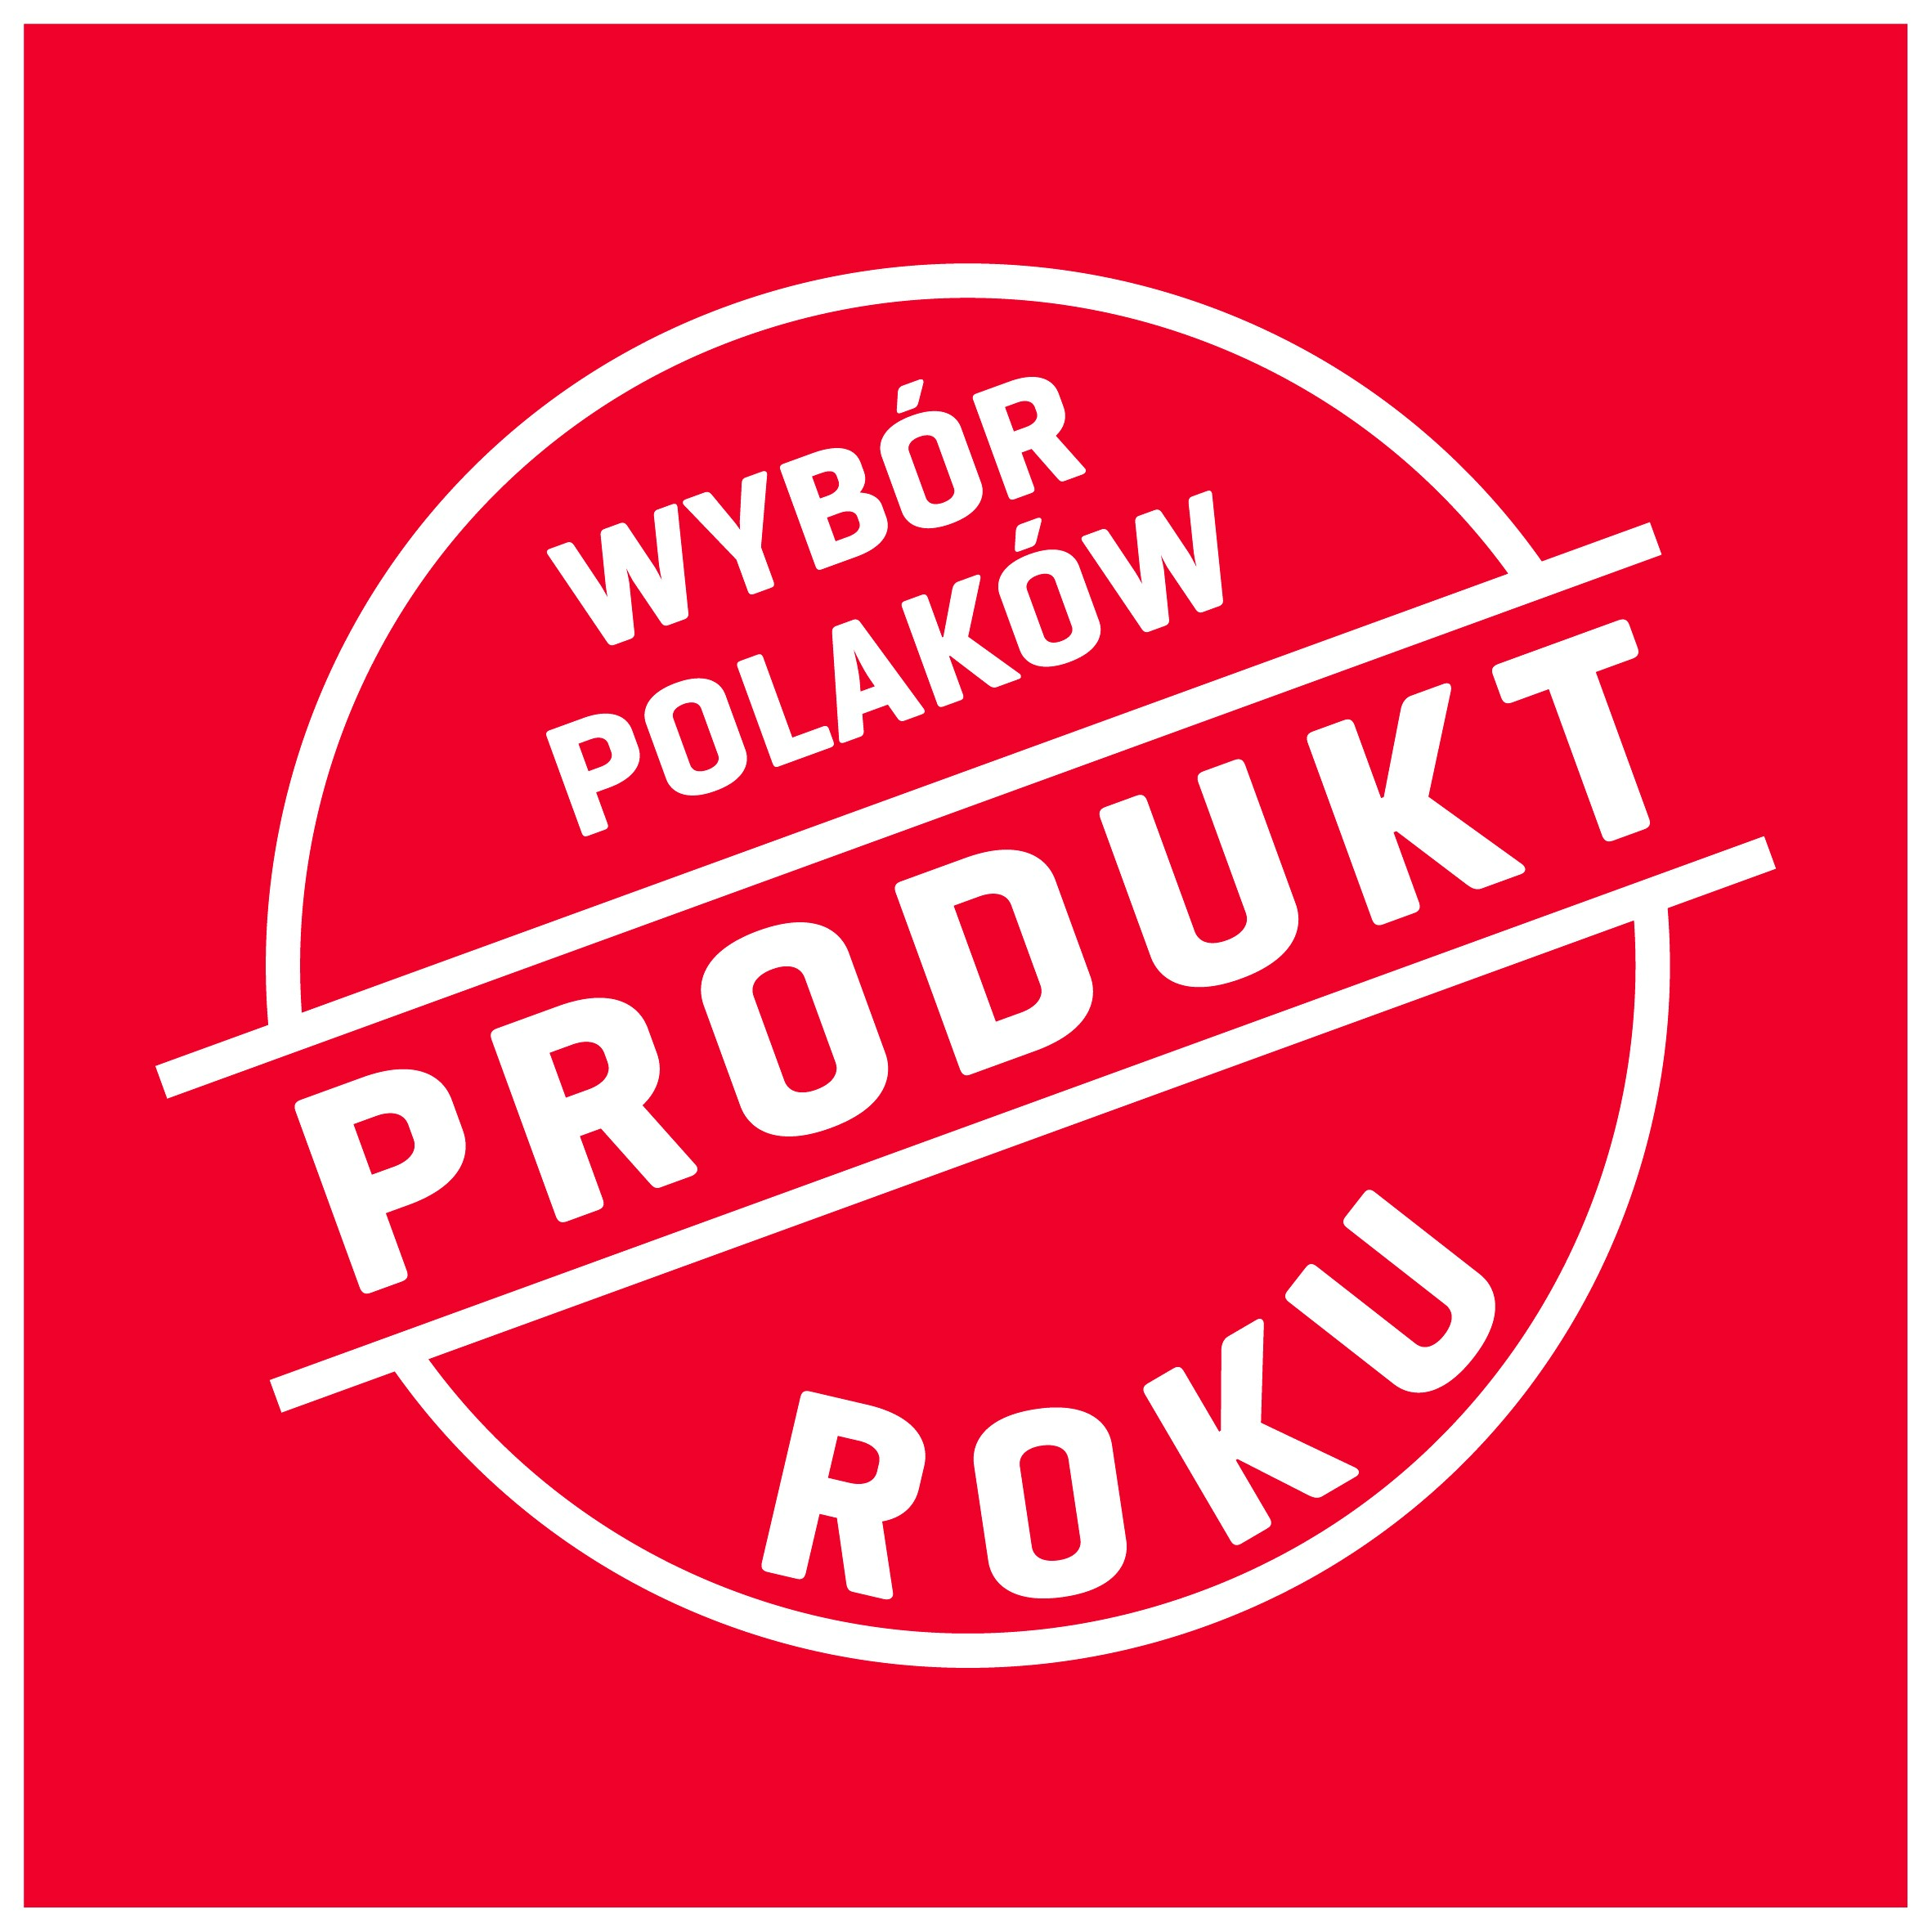 Kolejna edycja konkursu „Produkt Roku – Wybór Polaków”